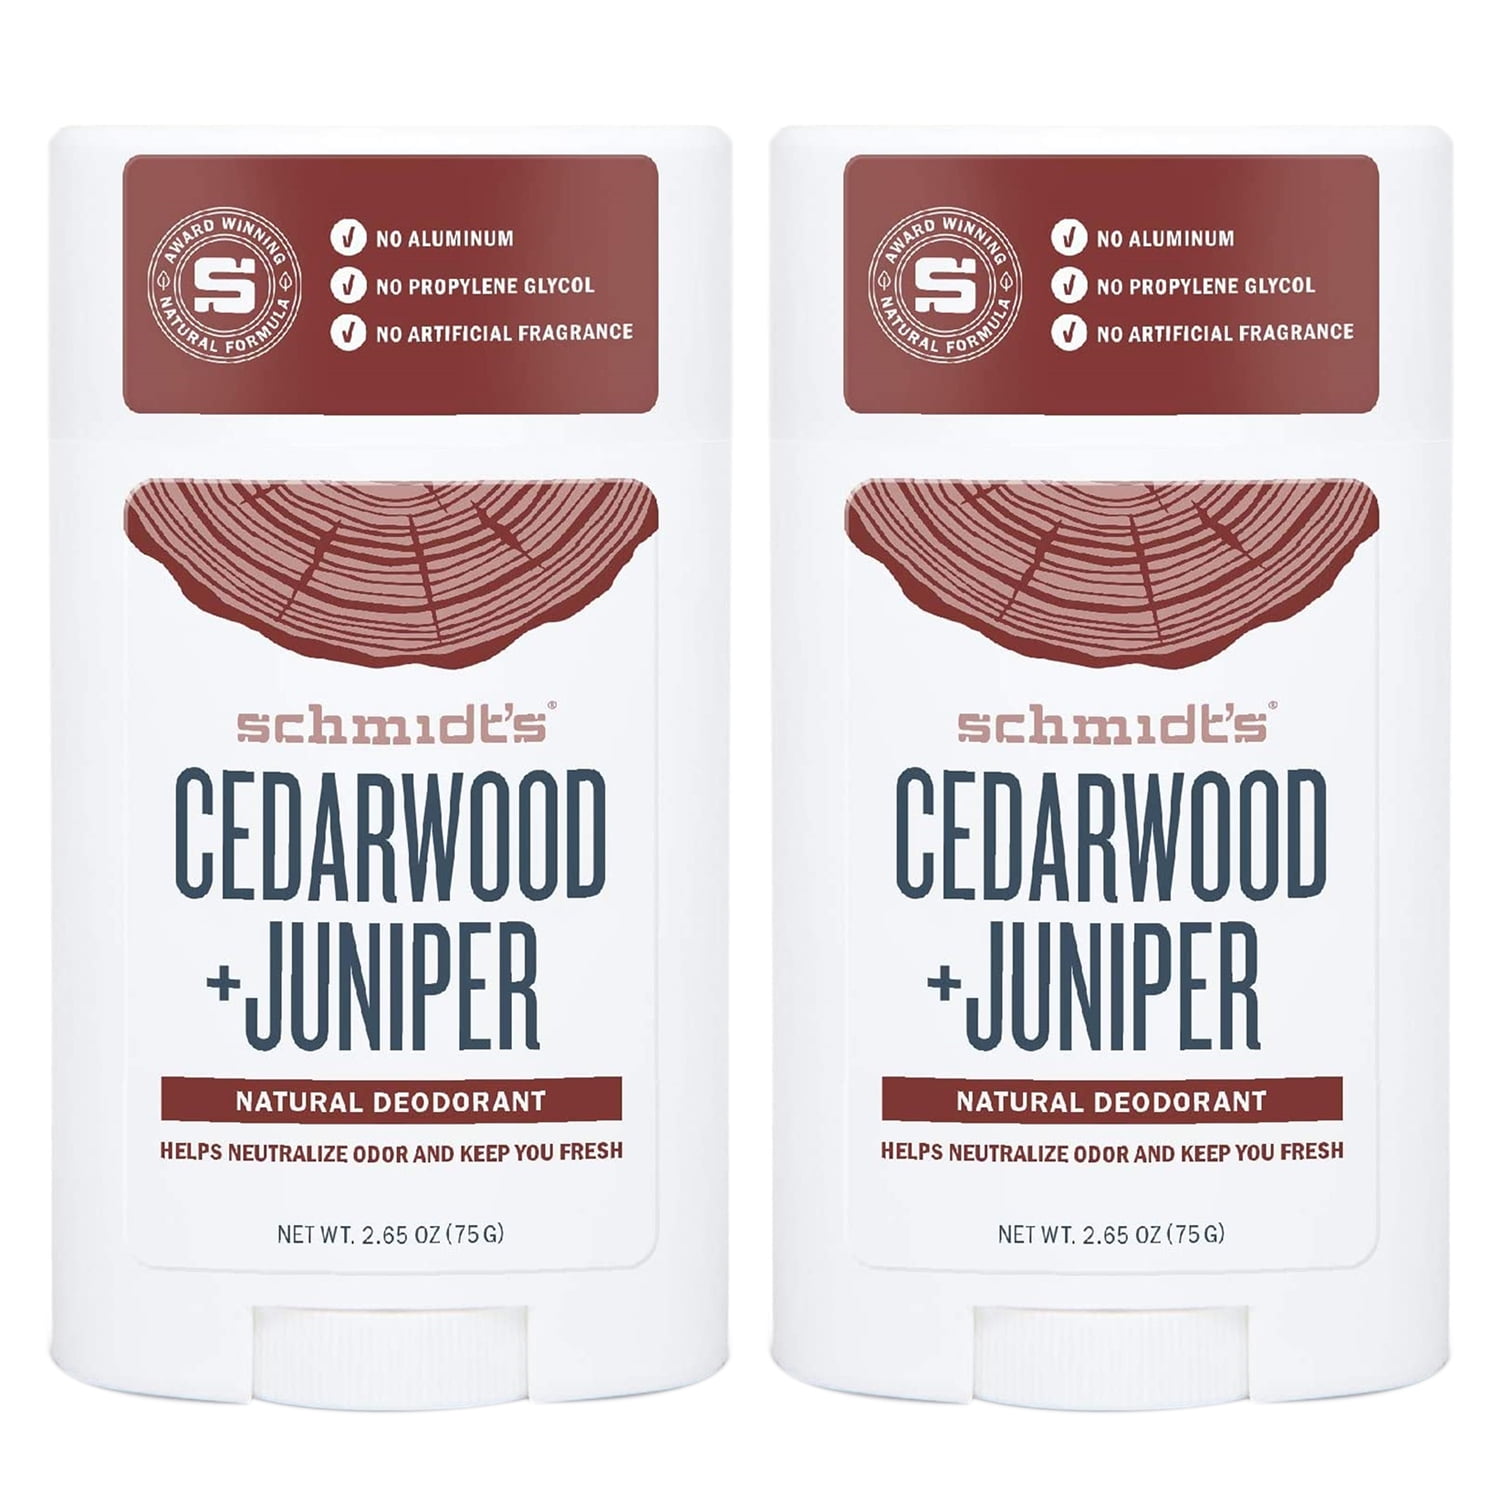 2-Pack Schmidts - Natural Deodorant Cedarwood Juniper - 2.65 by Schmidts Deodorant - Walmart.com